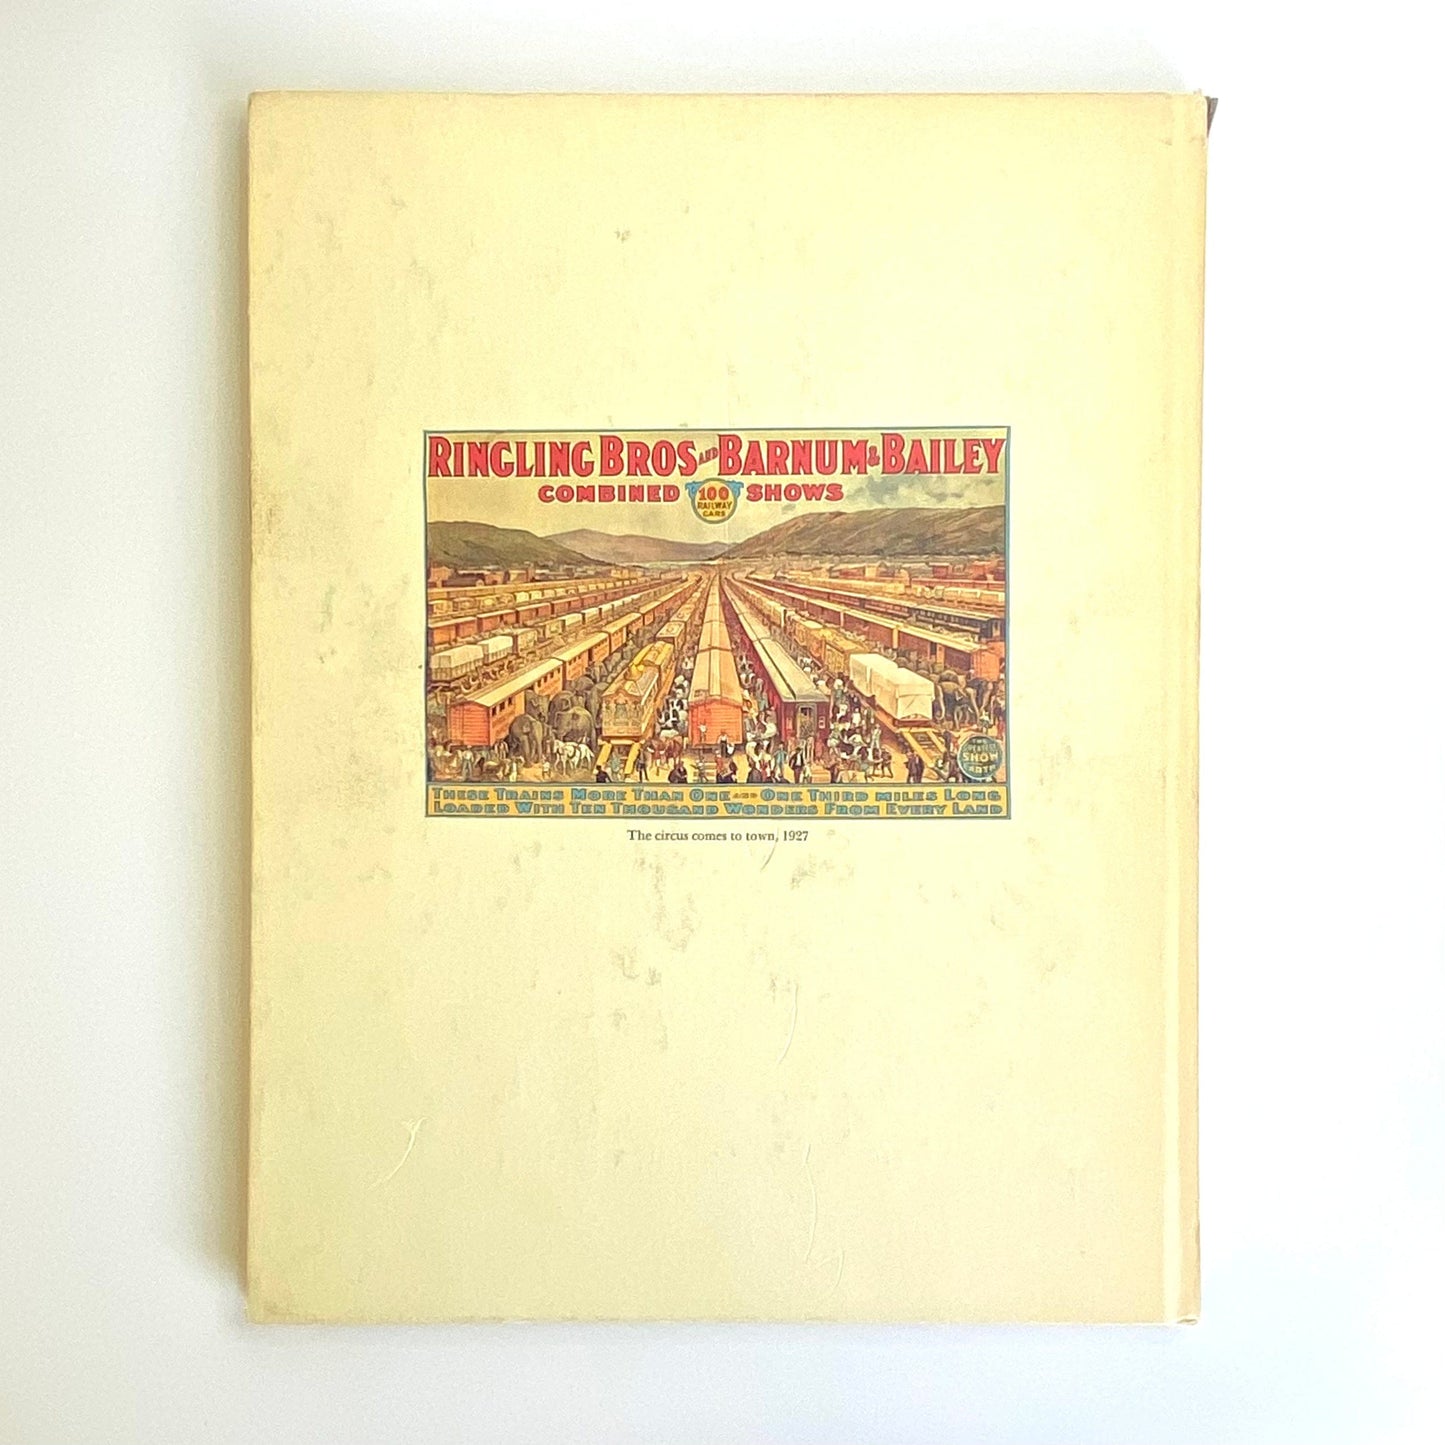 Vintage American Heritage December 1964 • Volume NVI, Number I Hardcover History Book